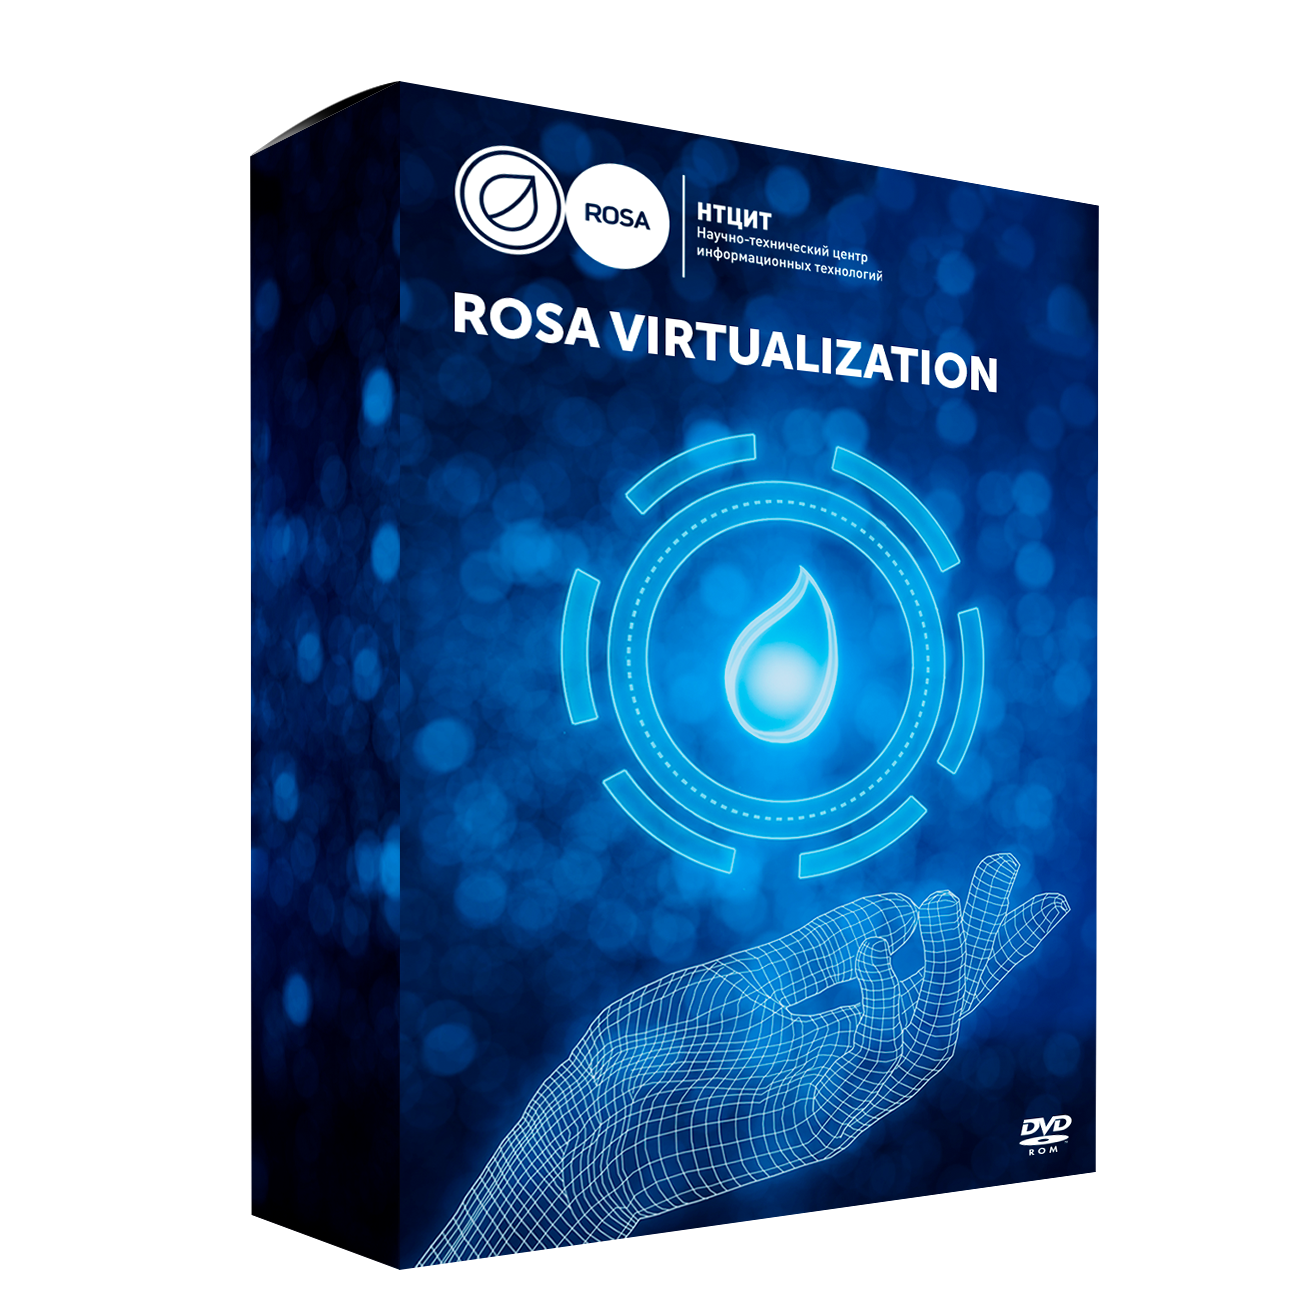 Сертификат продления стандартной технической поддержки для комплекса системы виртуализации ROSA Virtualization (100VM), сроком 1 год